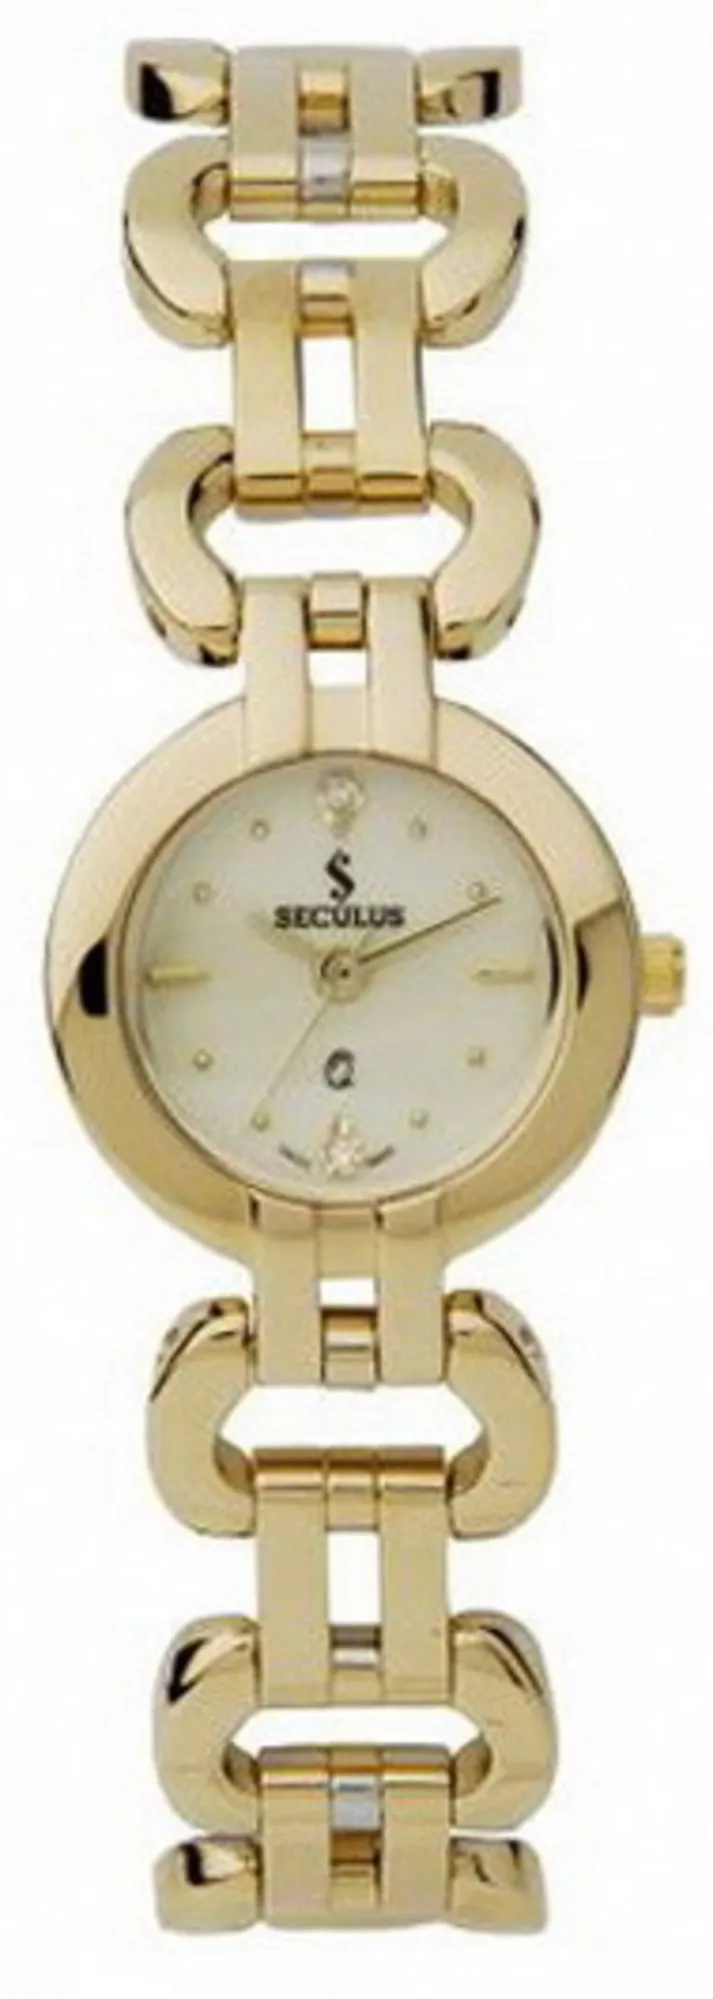 Часы Seculus 1598.1.763 white,gp